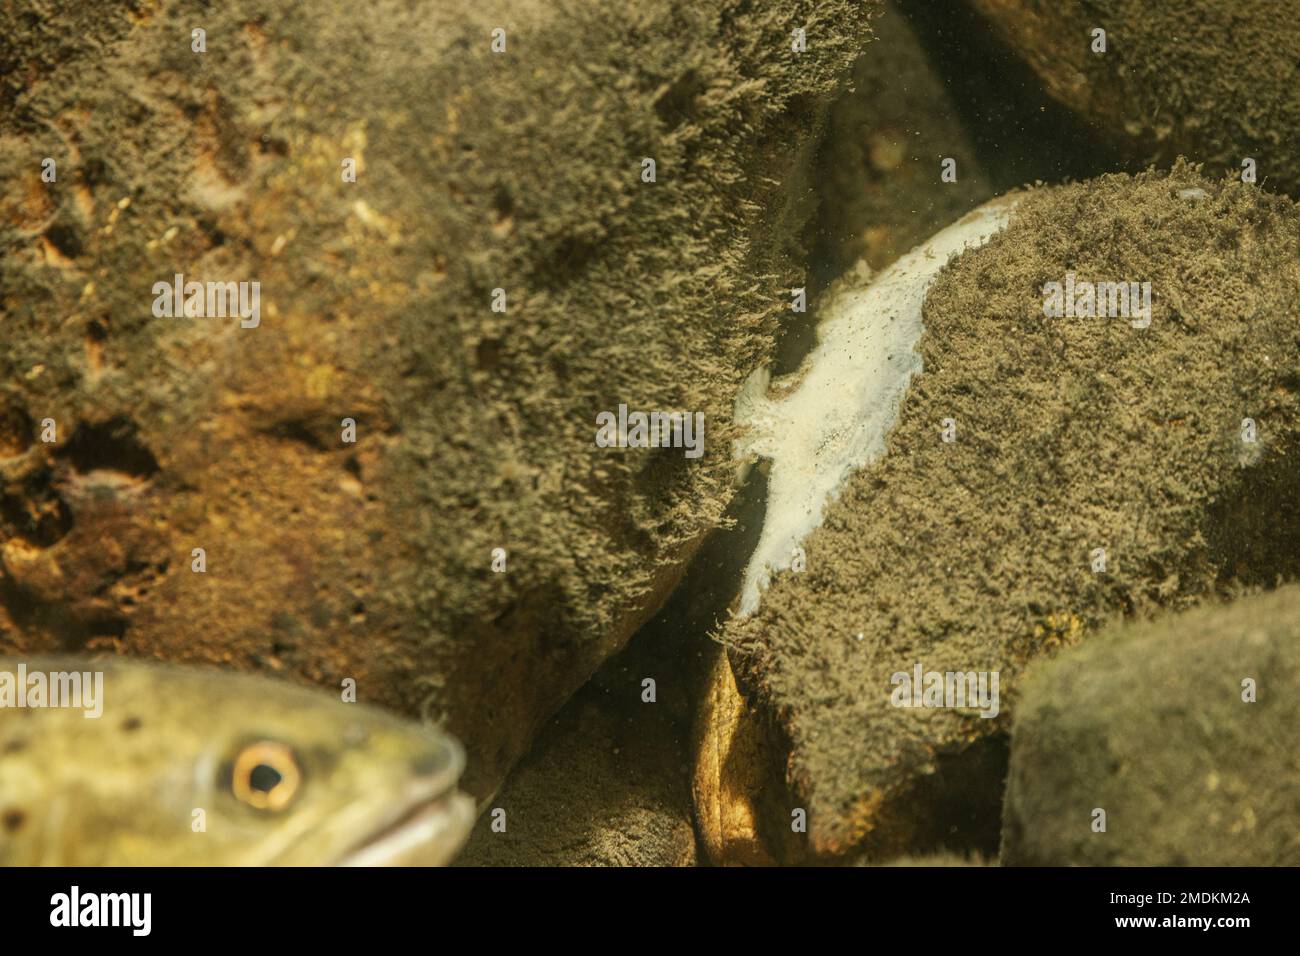 Esponja de agua dulce mayor (Ephydatia fluviatilis), se sienta en piedra de guijarros con algas Foto de stock